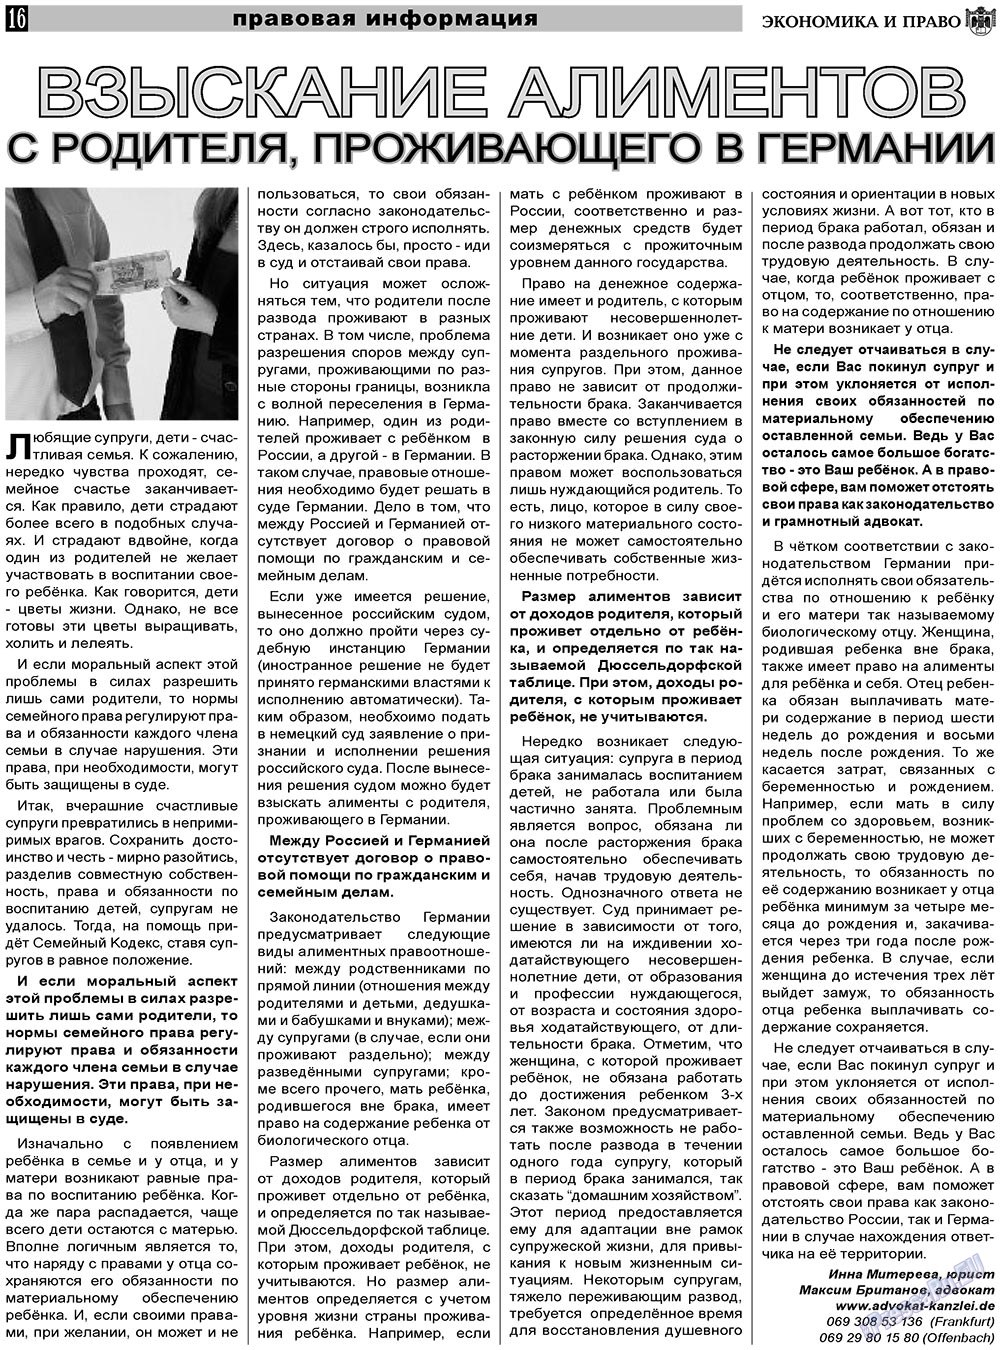 Экономика и право, газета. 2011 №6 стр.16